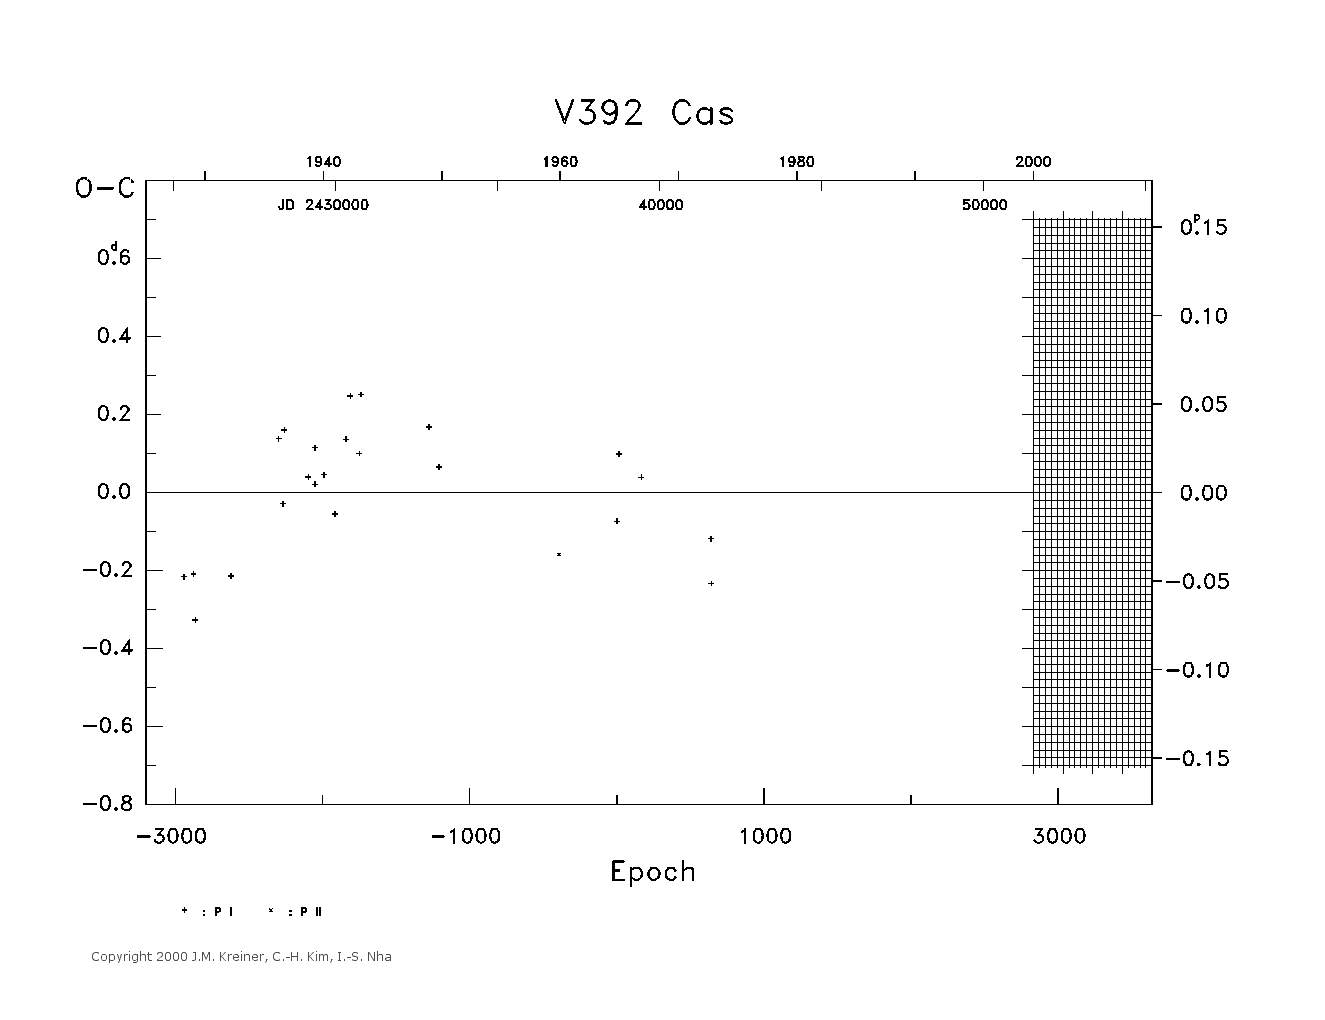 [IMAGE: large V392 CAS O-C diagram]